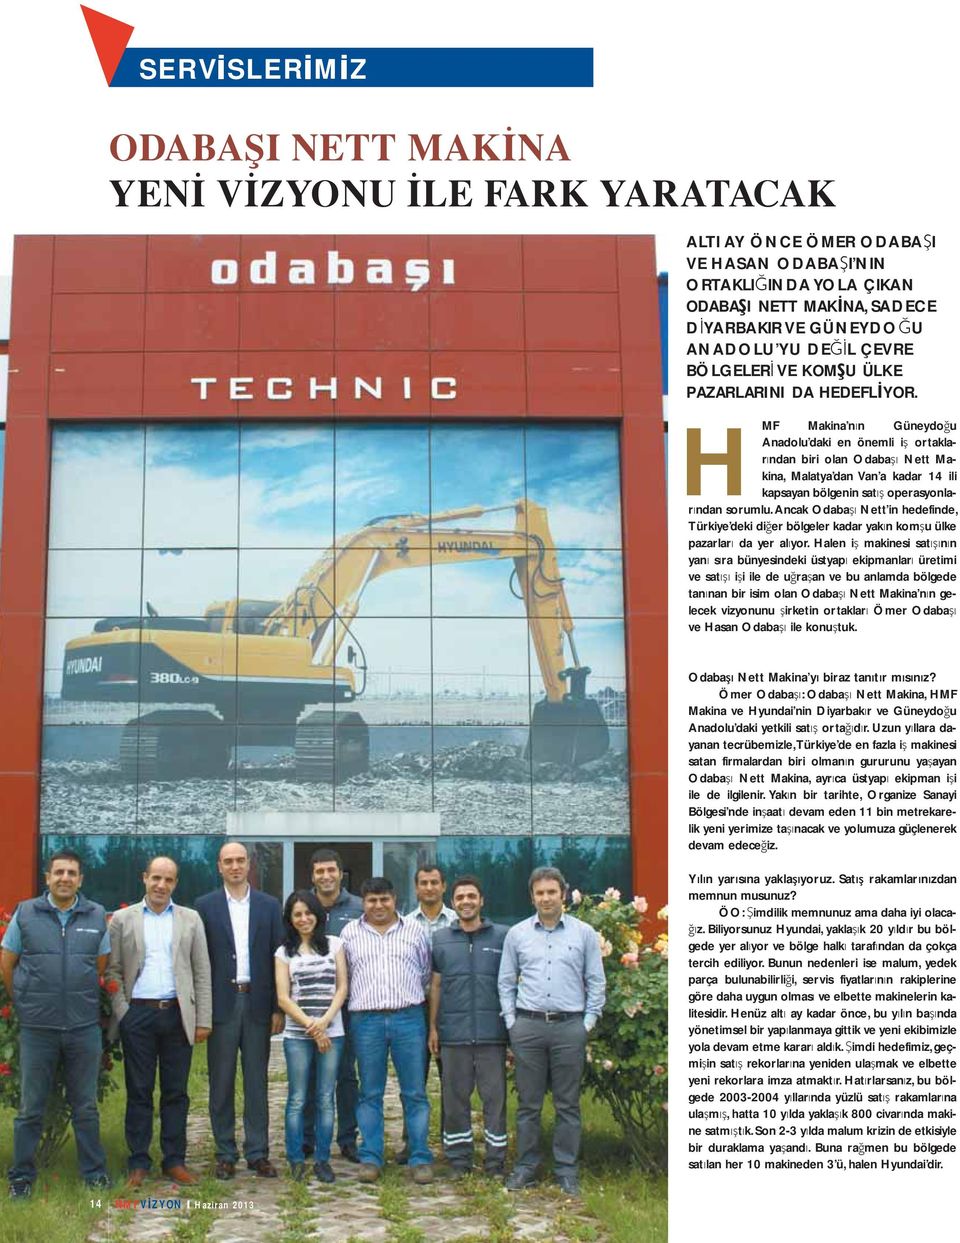 H MF Makina n n Güneydo u Anadolu daki en önemli i ortaklar ndan biri olan Odaba Nett Makina, Malatya dan Van a kadar 14 ili kapsayan bölgenin sat operasyonlar ndan sorumlu.